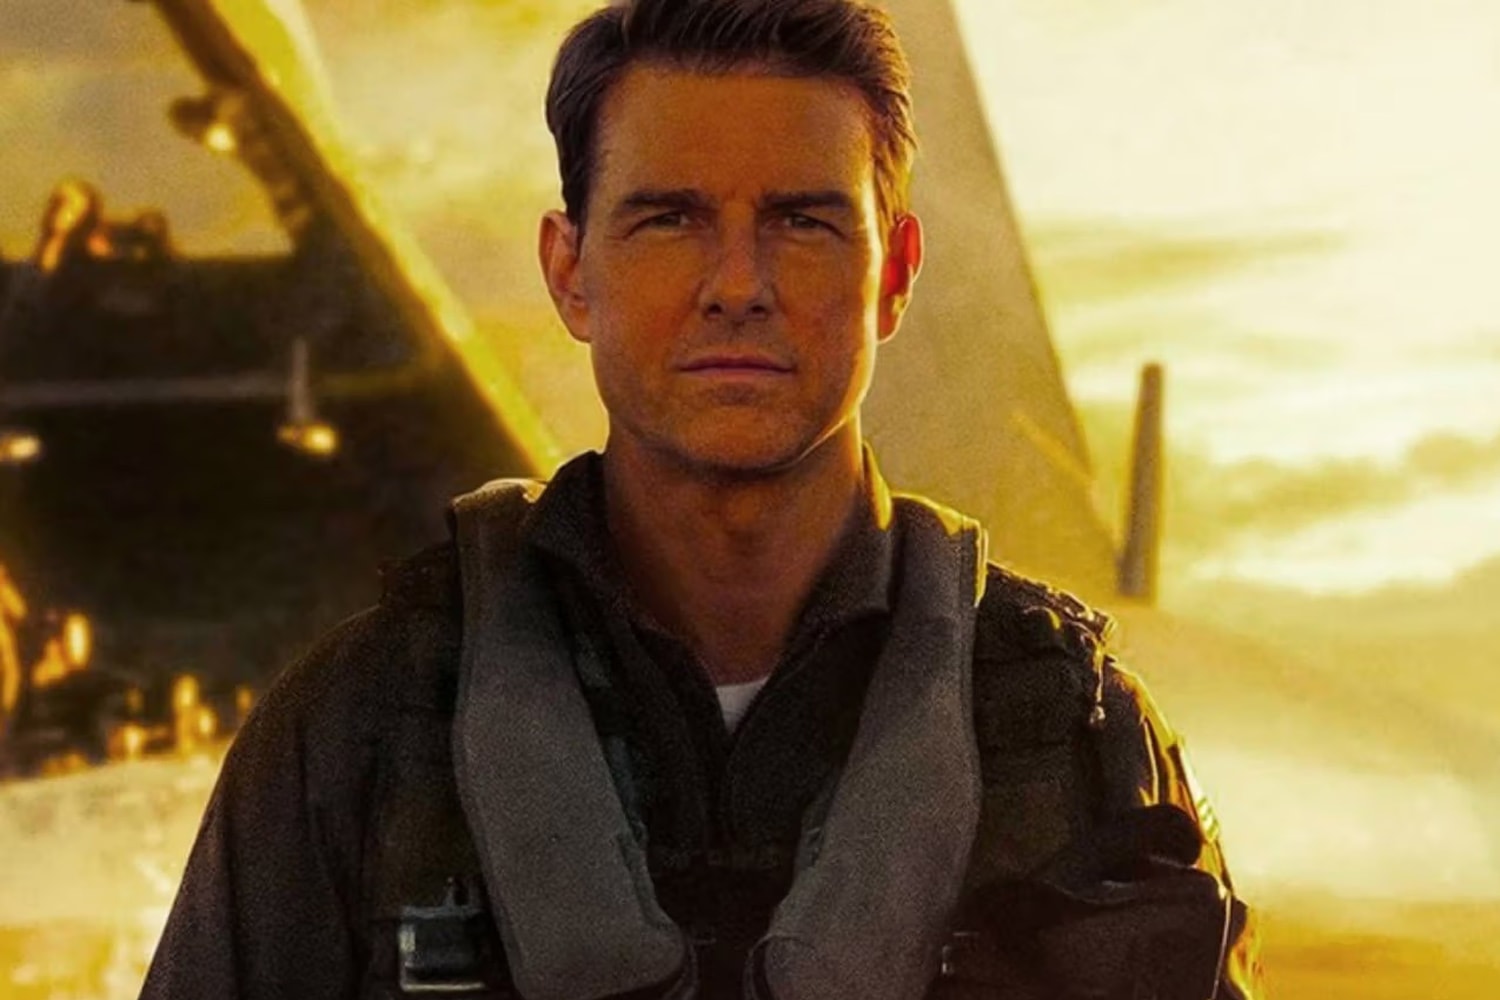 消息稱 Tom Cruise 主演票房大片《Top Gun: Maverick》確定推出續集《Top Gun 3》